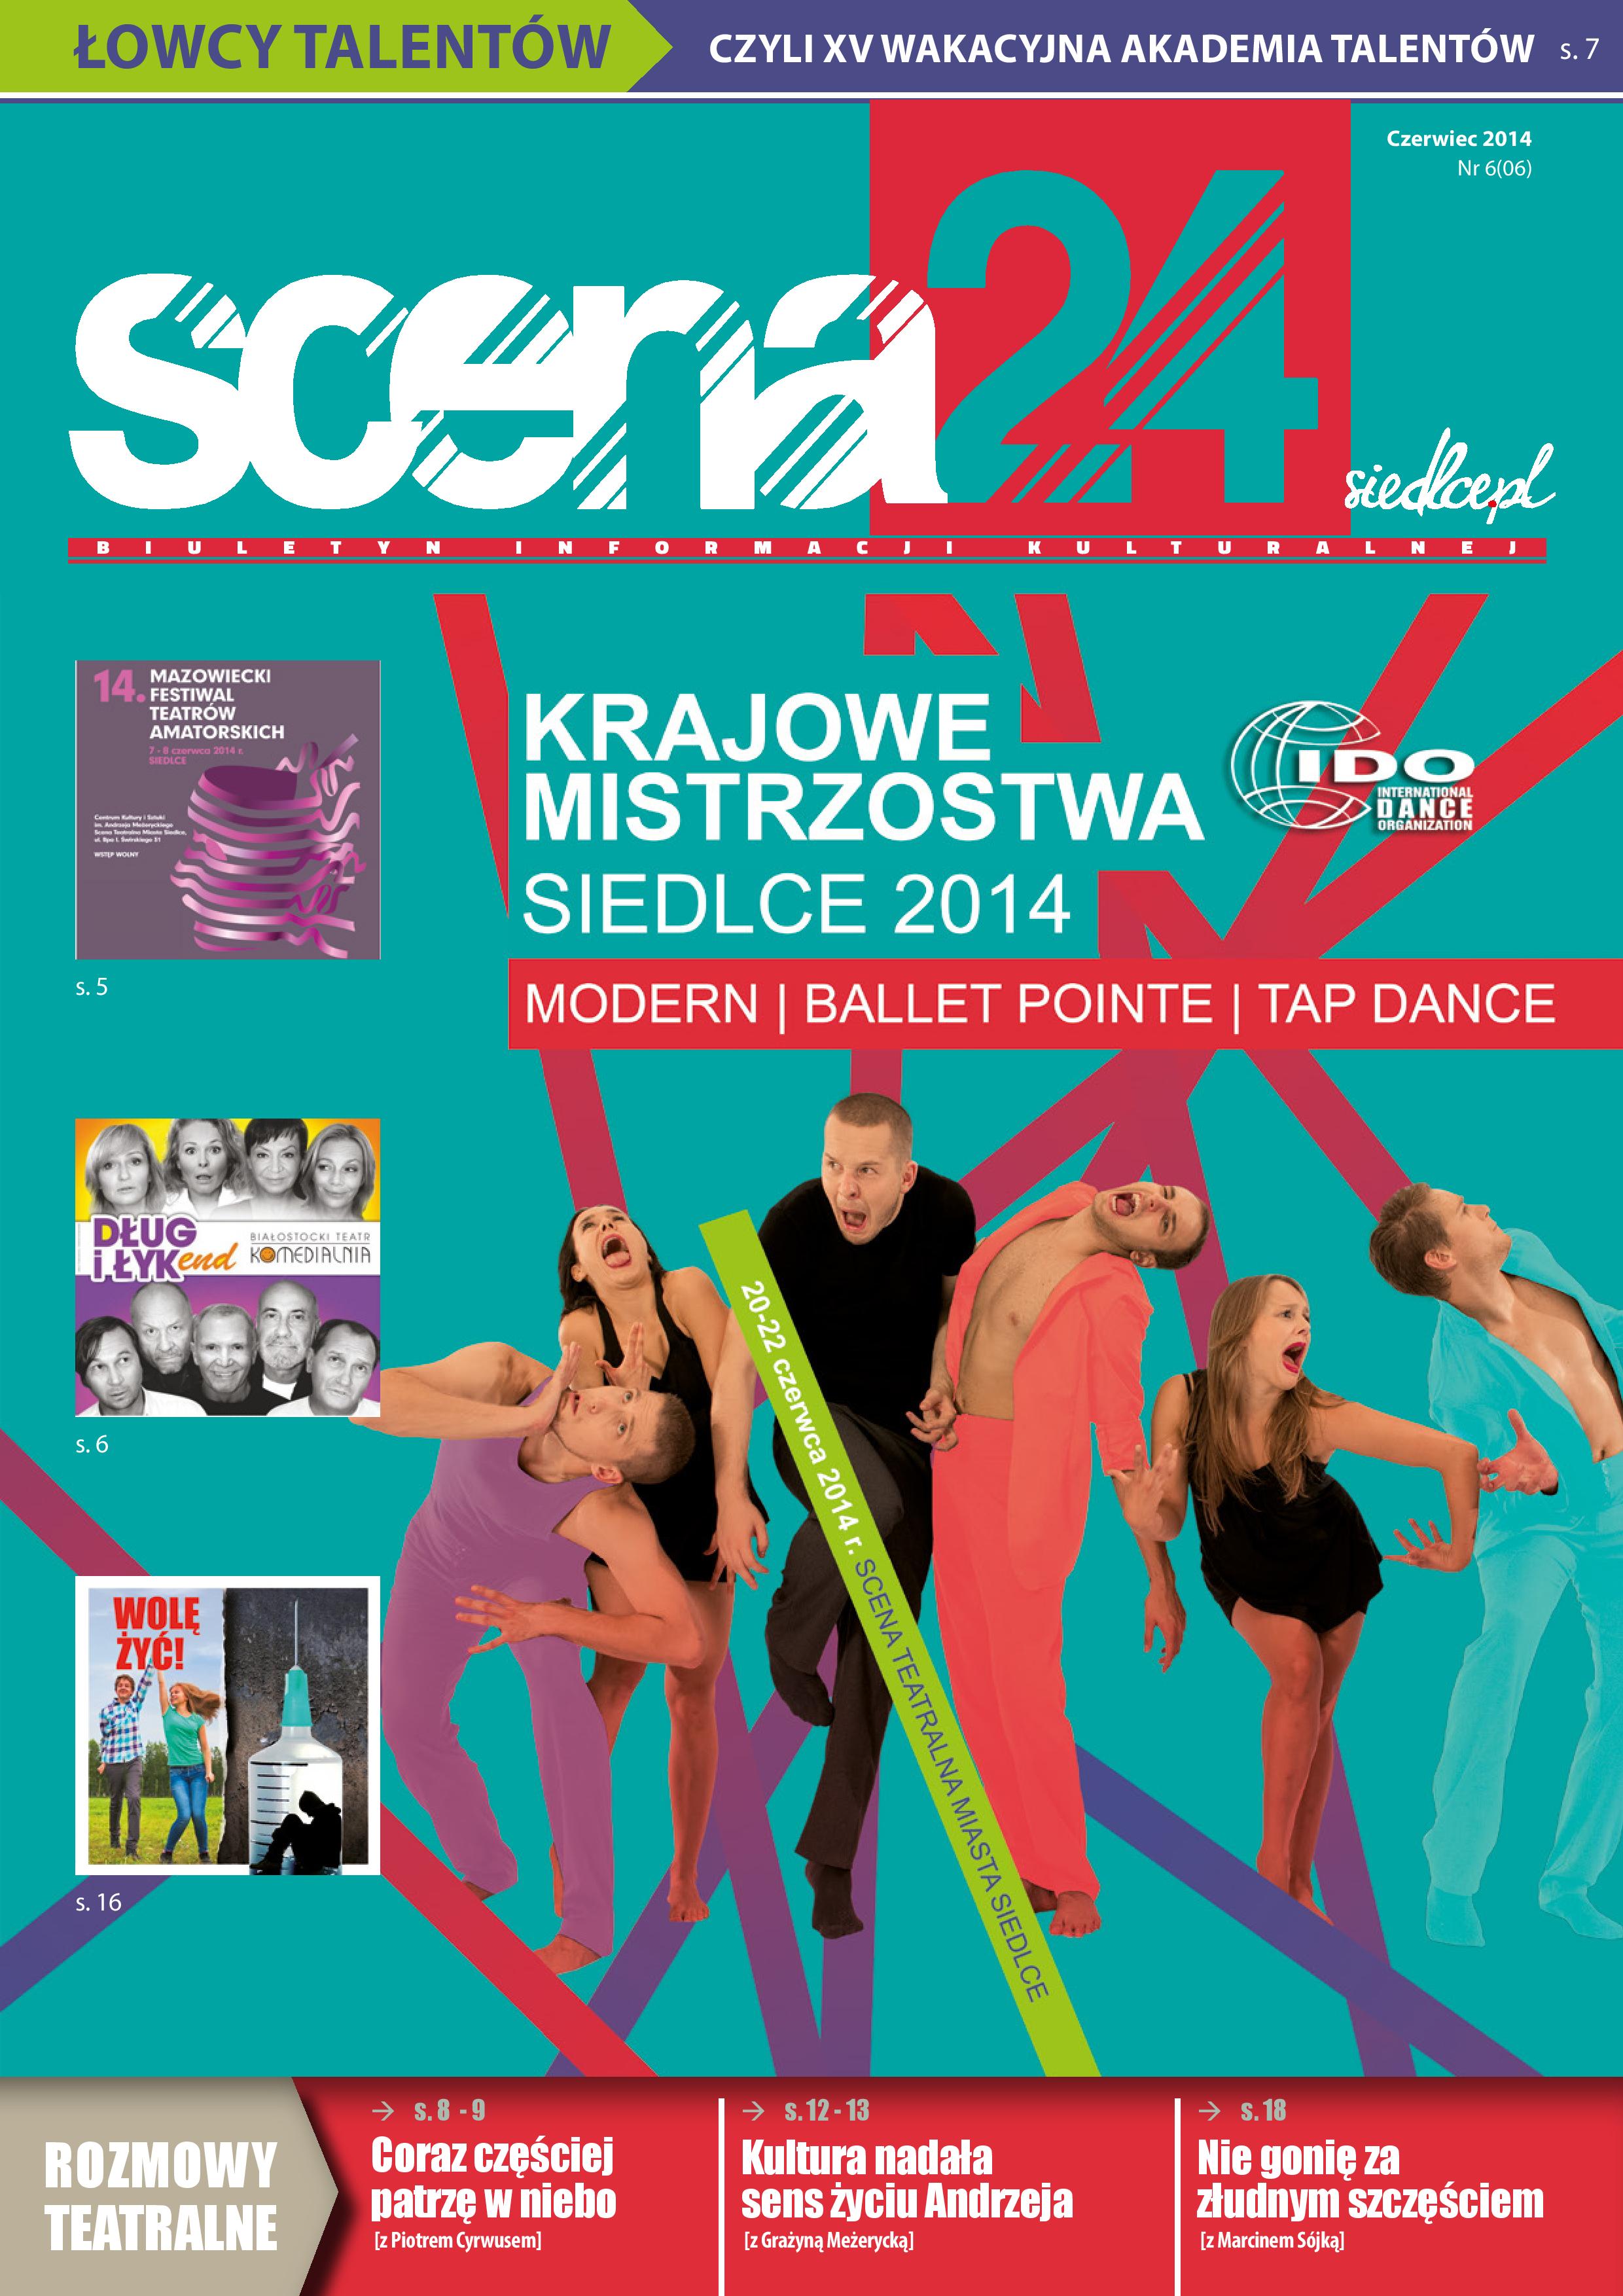 Czerwcowe wydanie miesięcznika "Scena 24": ciekawe artykuły, opinie i wywiady. Zapraszamy do lektury!